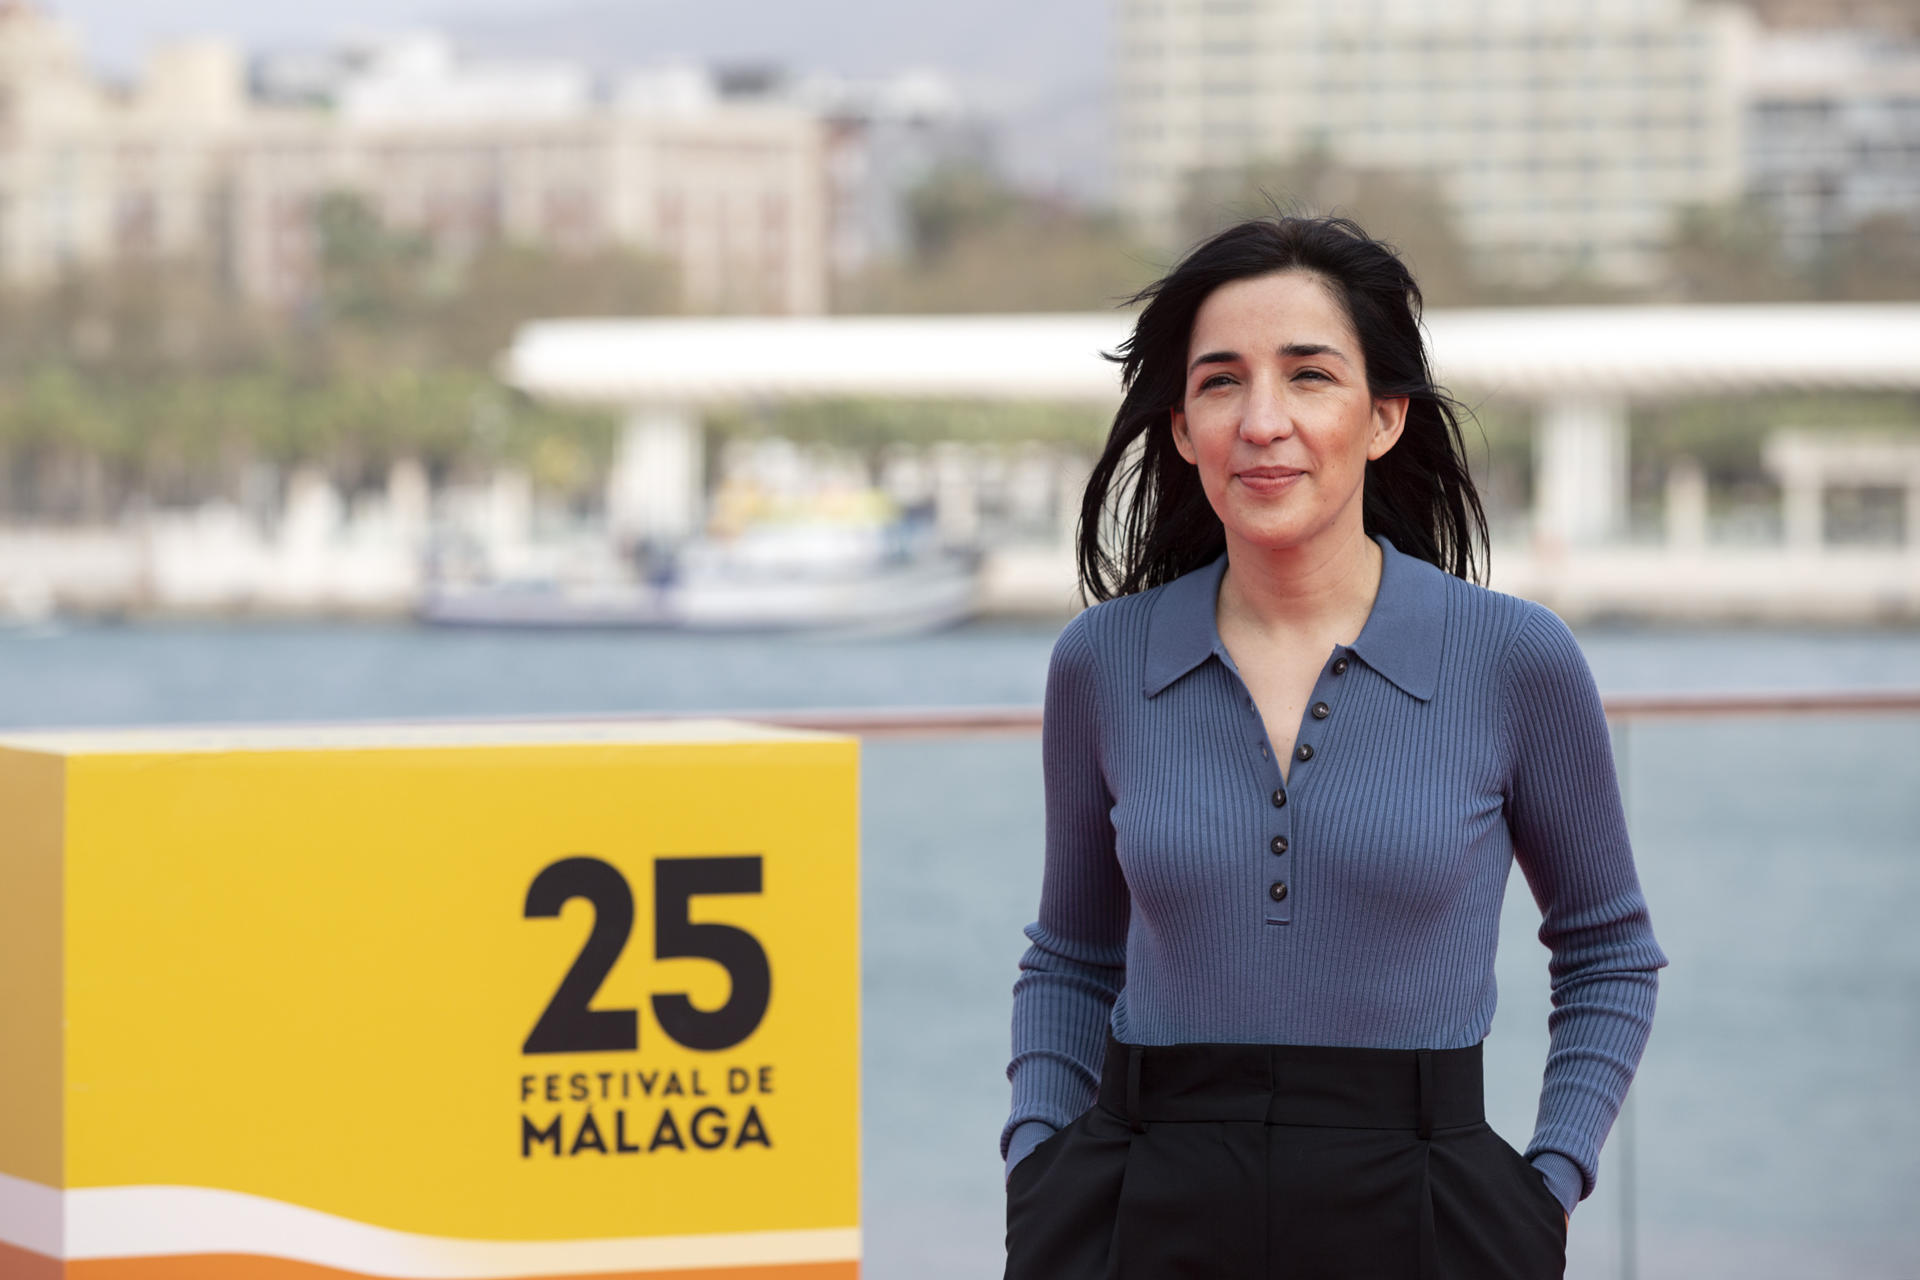 La directora de cine Alauda Ruiz de Azúa, en una imagen de archivo. EFE/Daniel Pérez